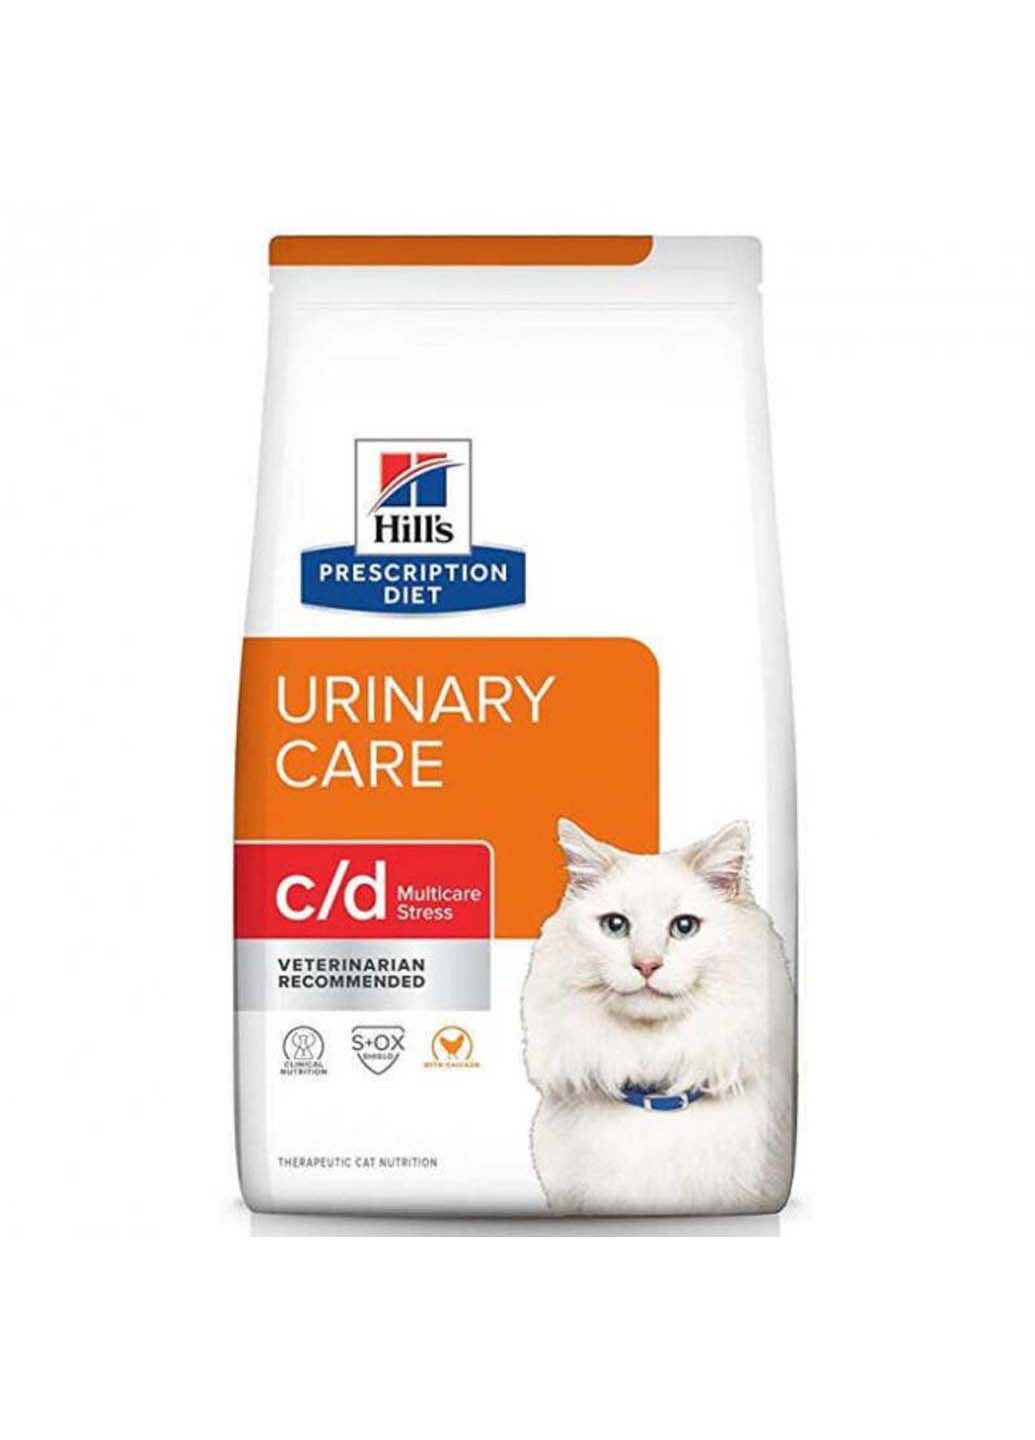 Корм-диета для мочевыводящих путей у кошек Prescription Diet c/d Urinary Care Multicare Stress 400 г HILLS (286472941)